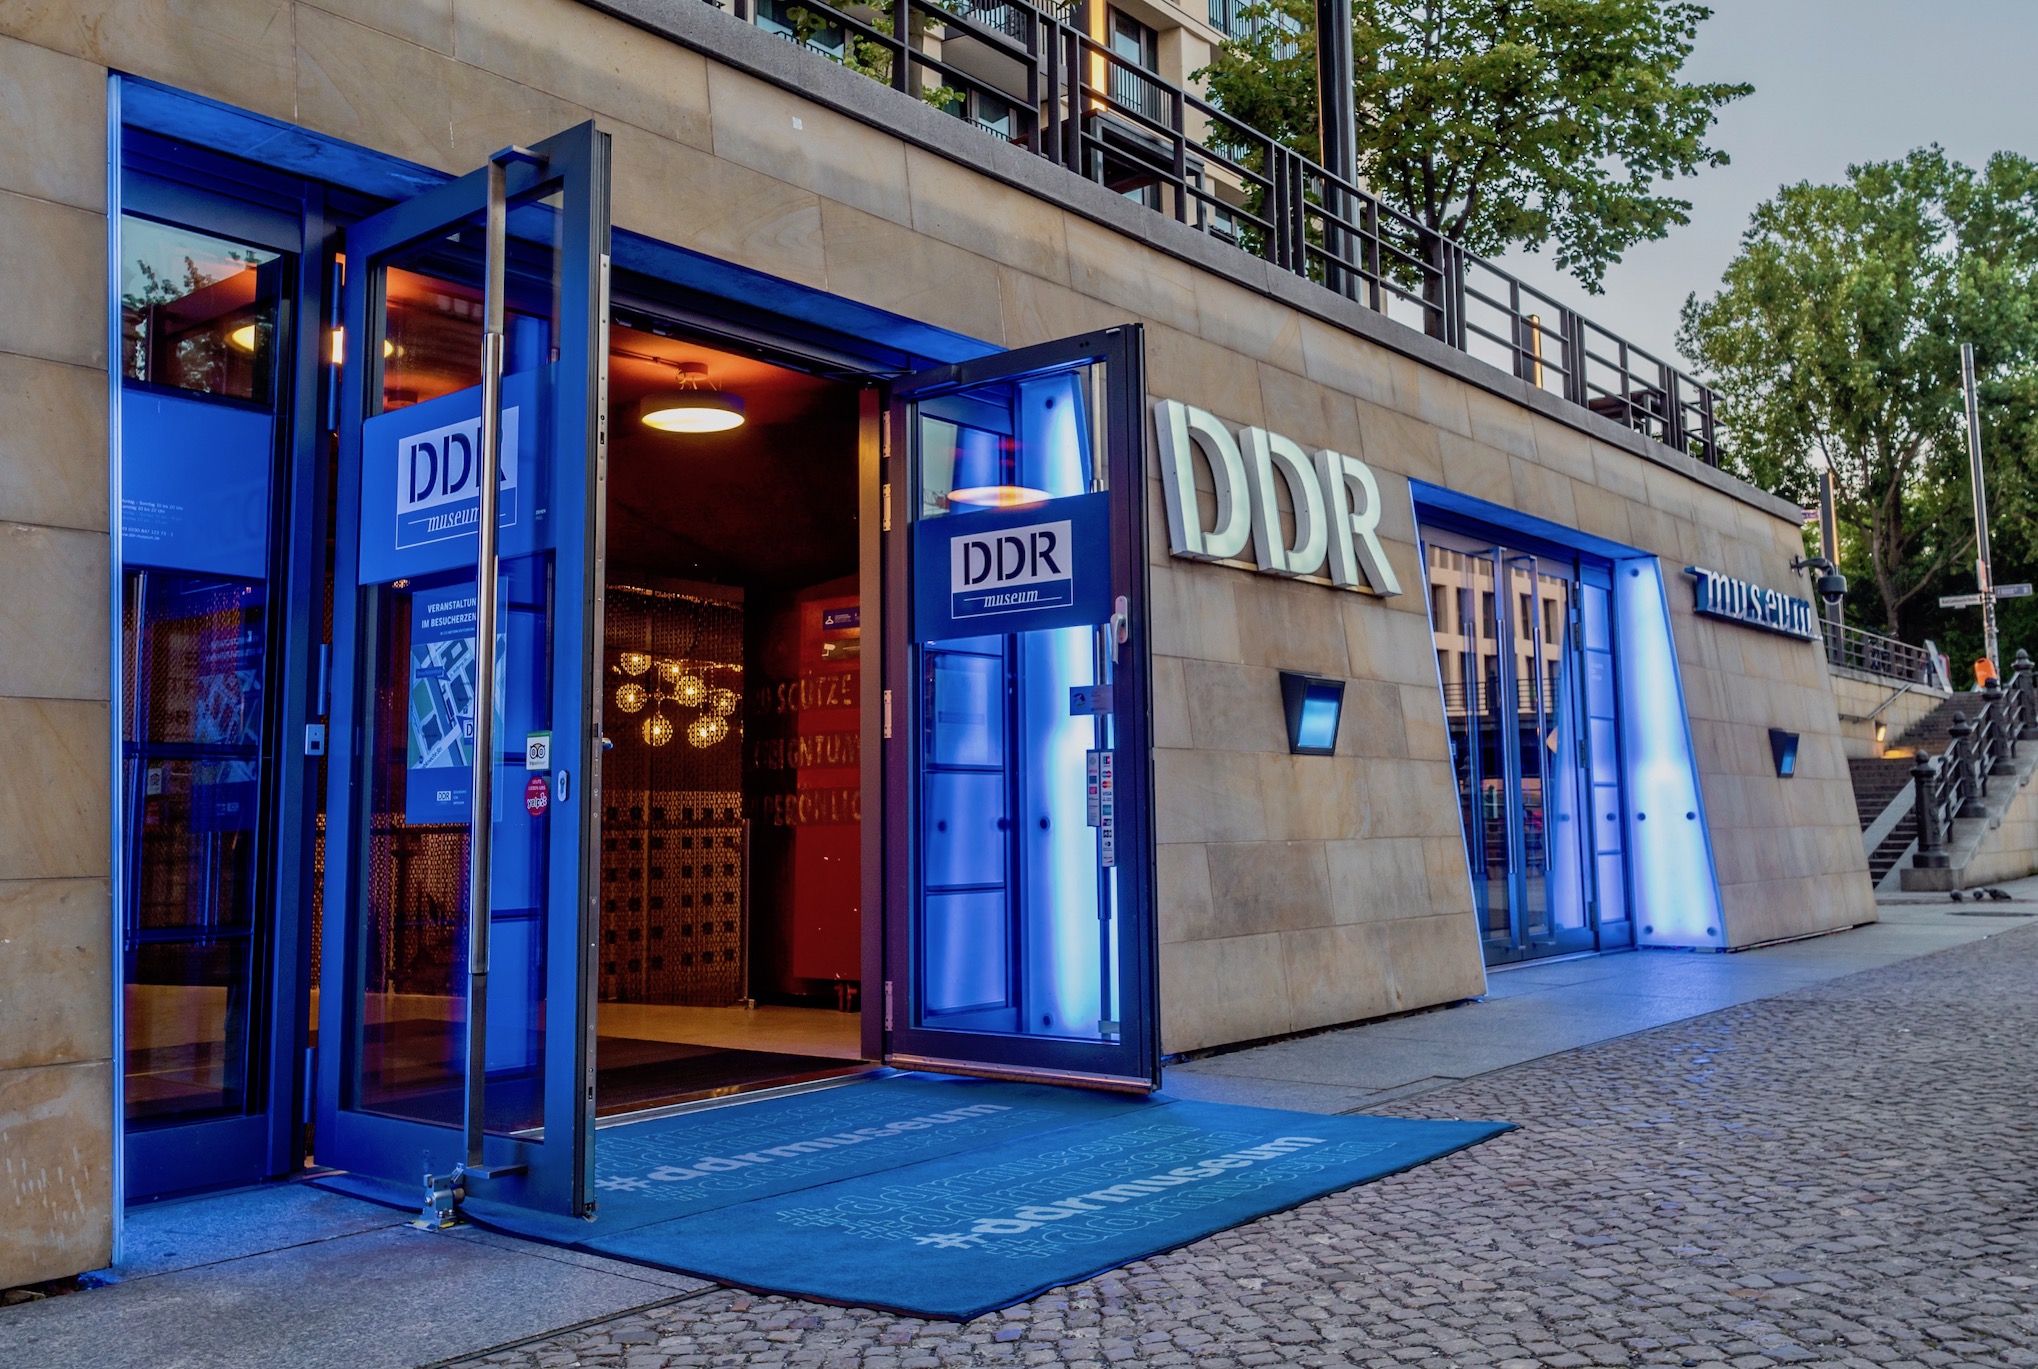 Das DDR Museum, eines der besten Museen in Berlin